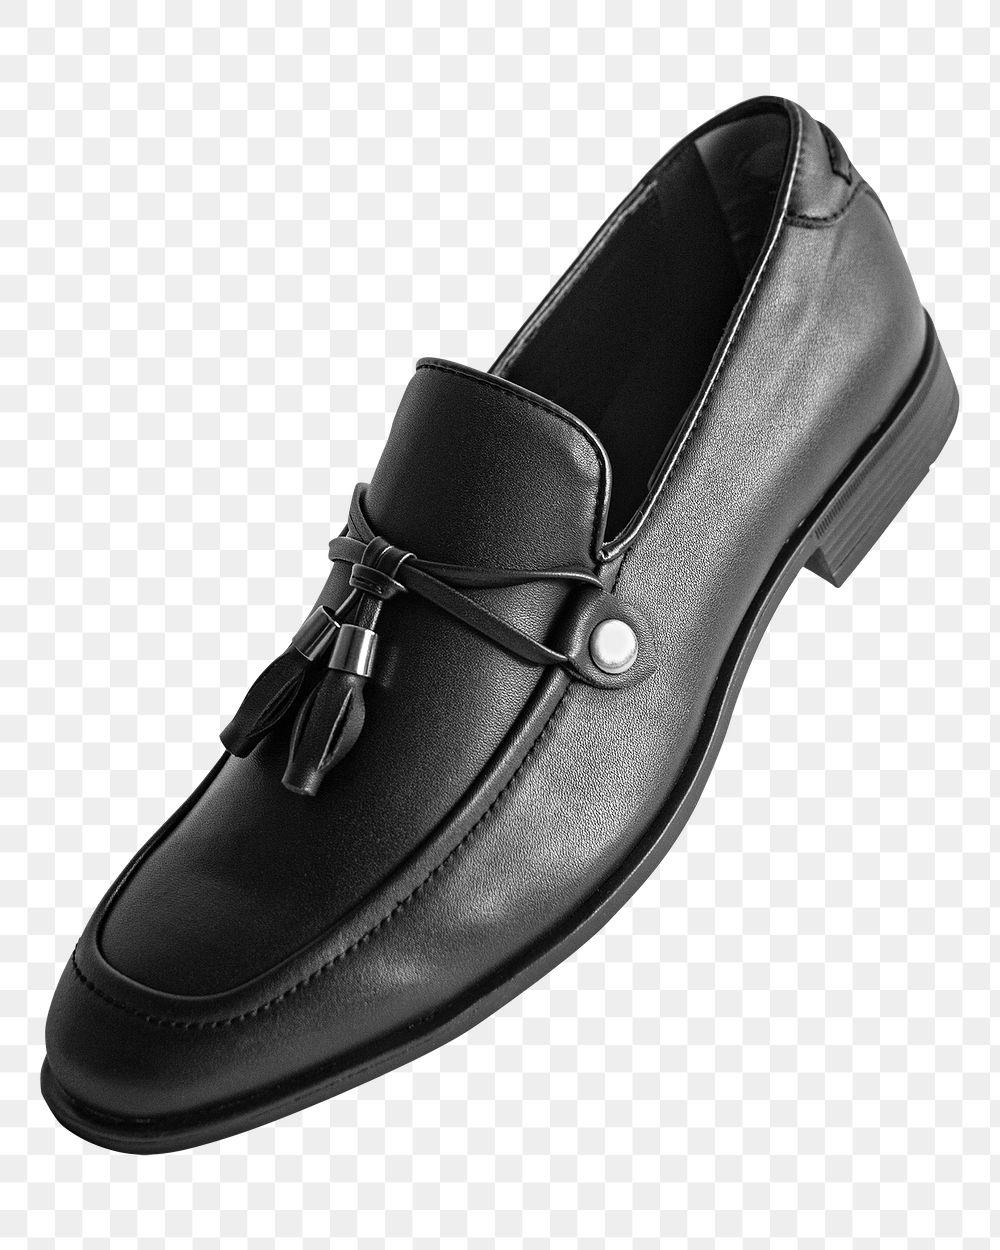 Black tassel loafers men's shoes png